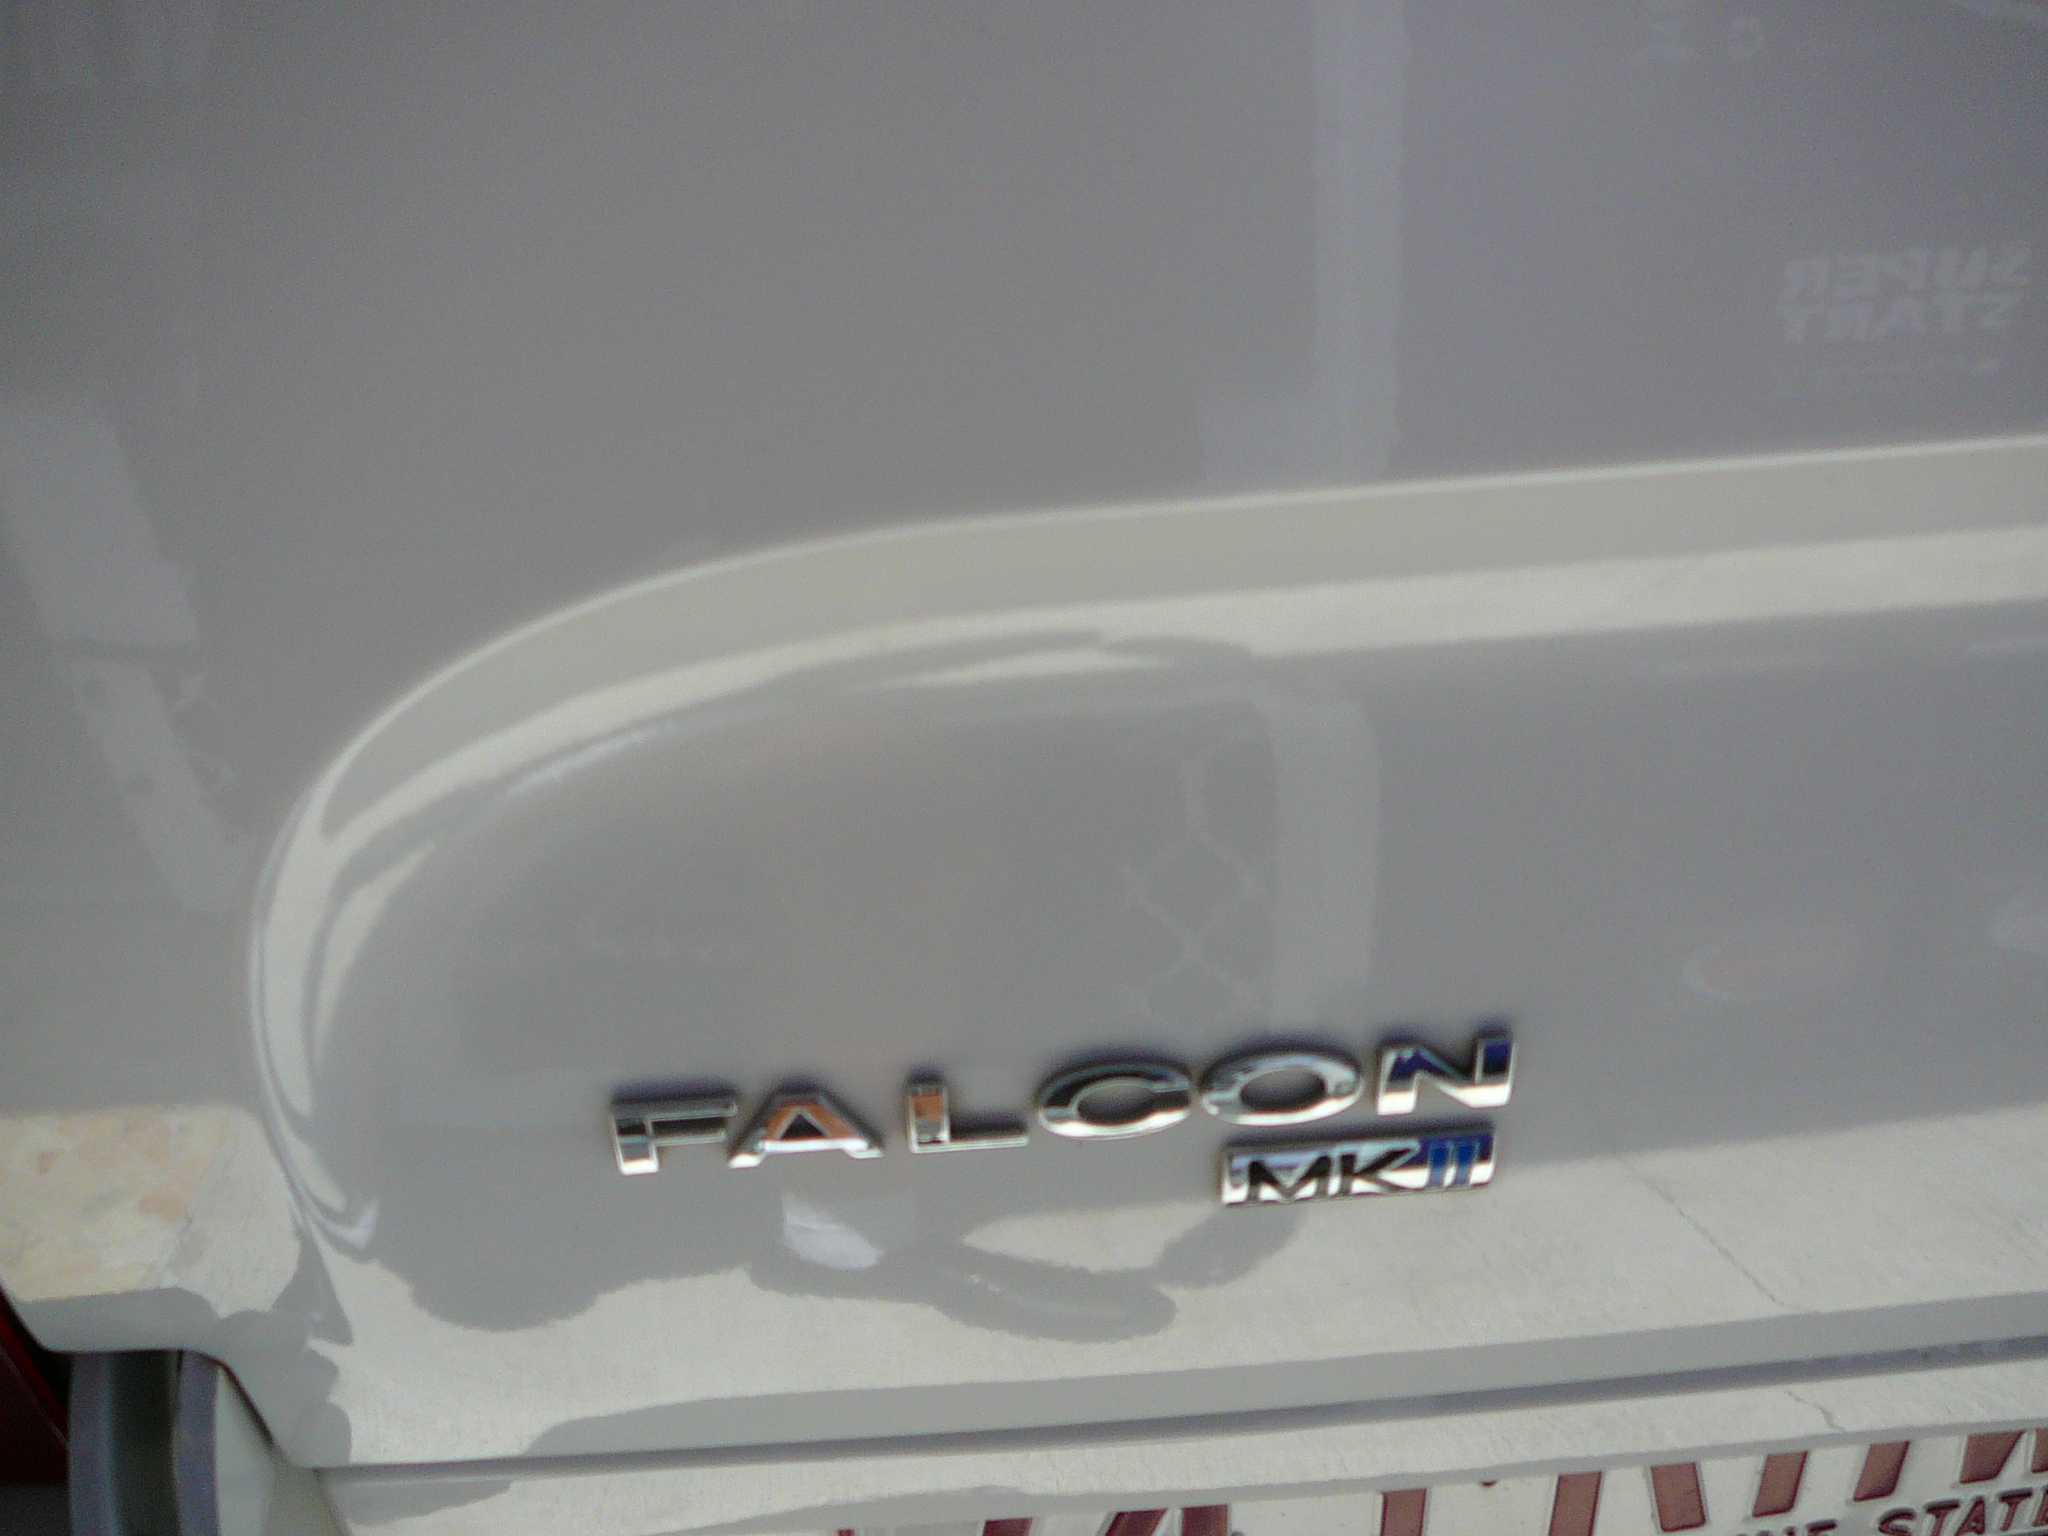 Ford Falcon BA CD, AM FM Radio, USB iPod iPhone